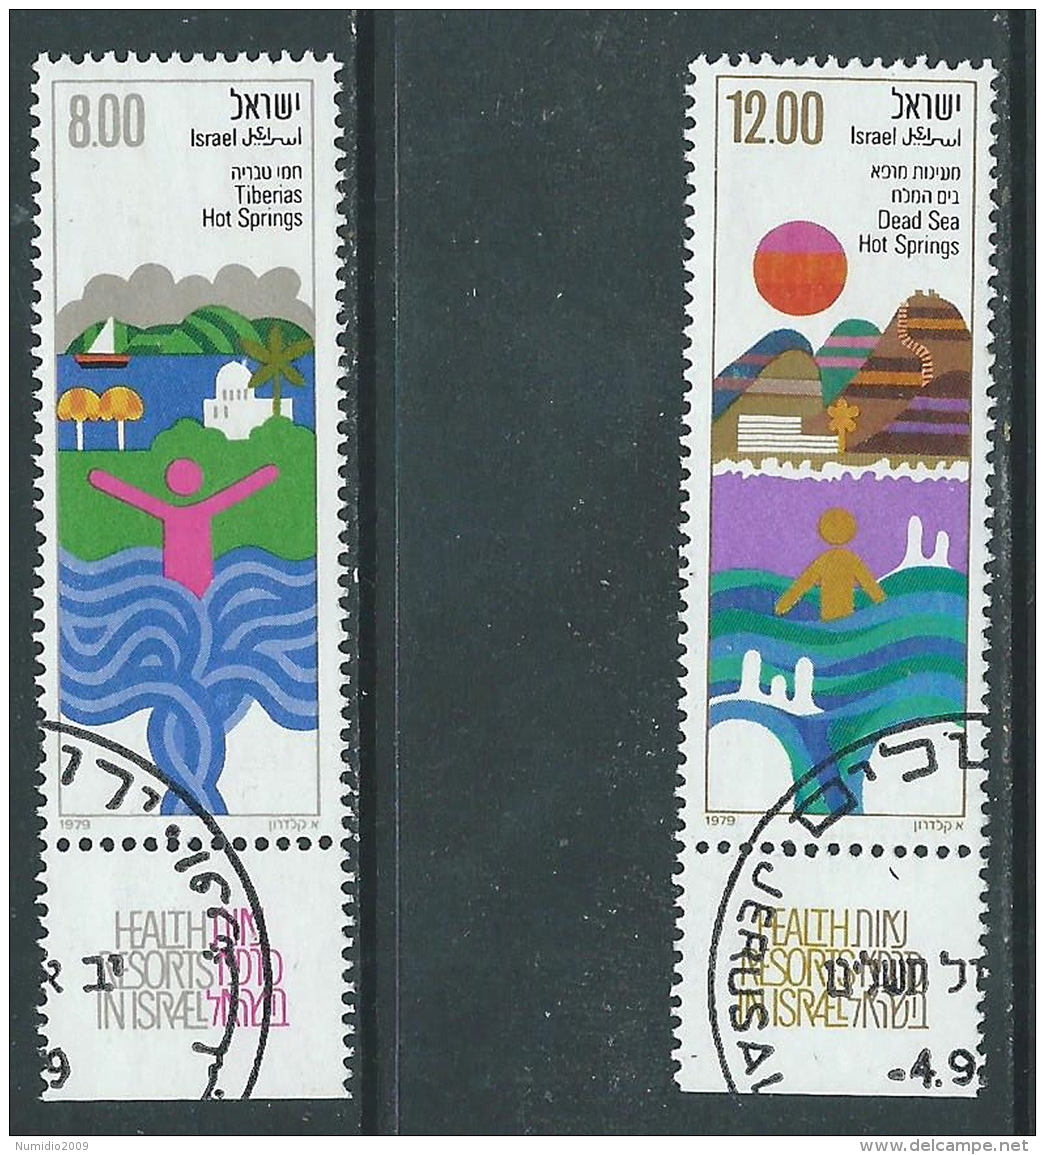 1979 ISRAELE USATO STAZIONI TERMALI CON APPENDICE - T12-4 - Gebraucht (mit Tabs)